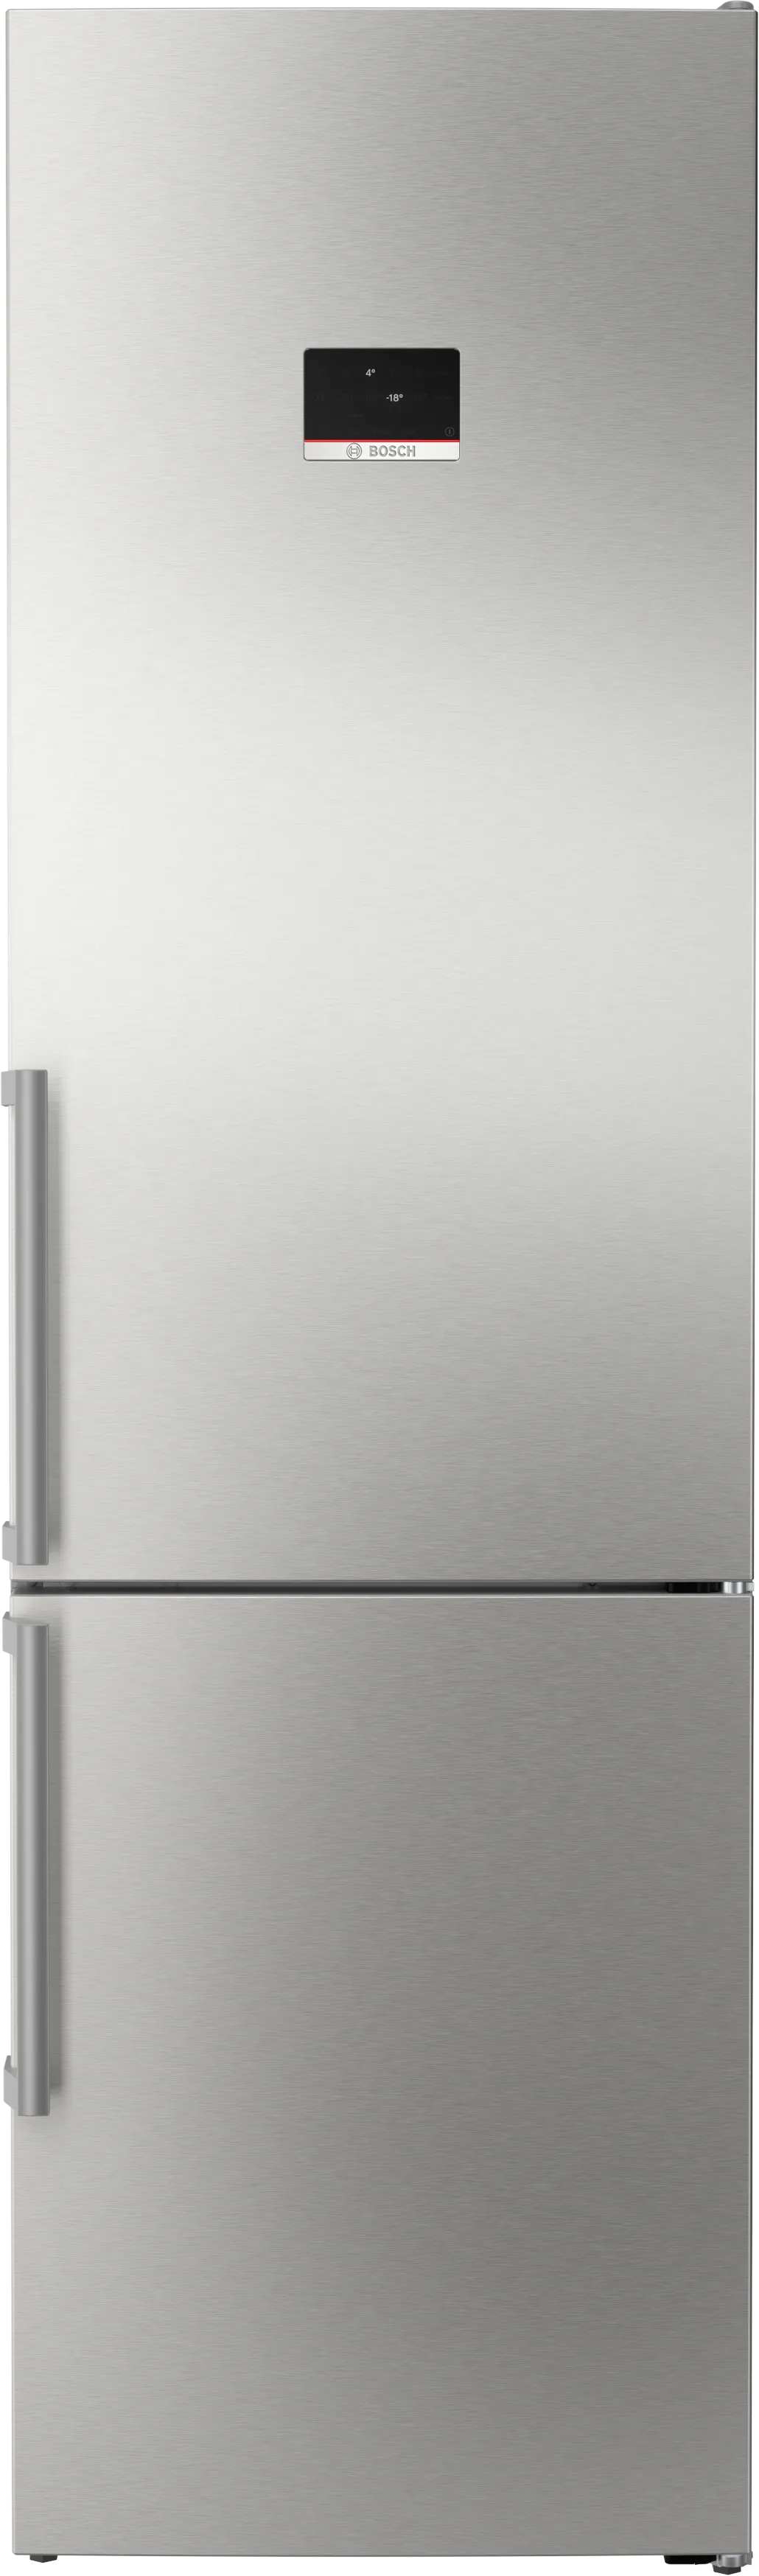 Serija 6 Laisvai statomas šaldytuvas-šaldiklis su šaldiklio skyriumi apačioje 203 x 60 cm Nerūdijančio plieno (atsparus pirštų antspaudams) 